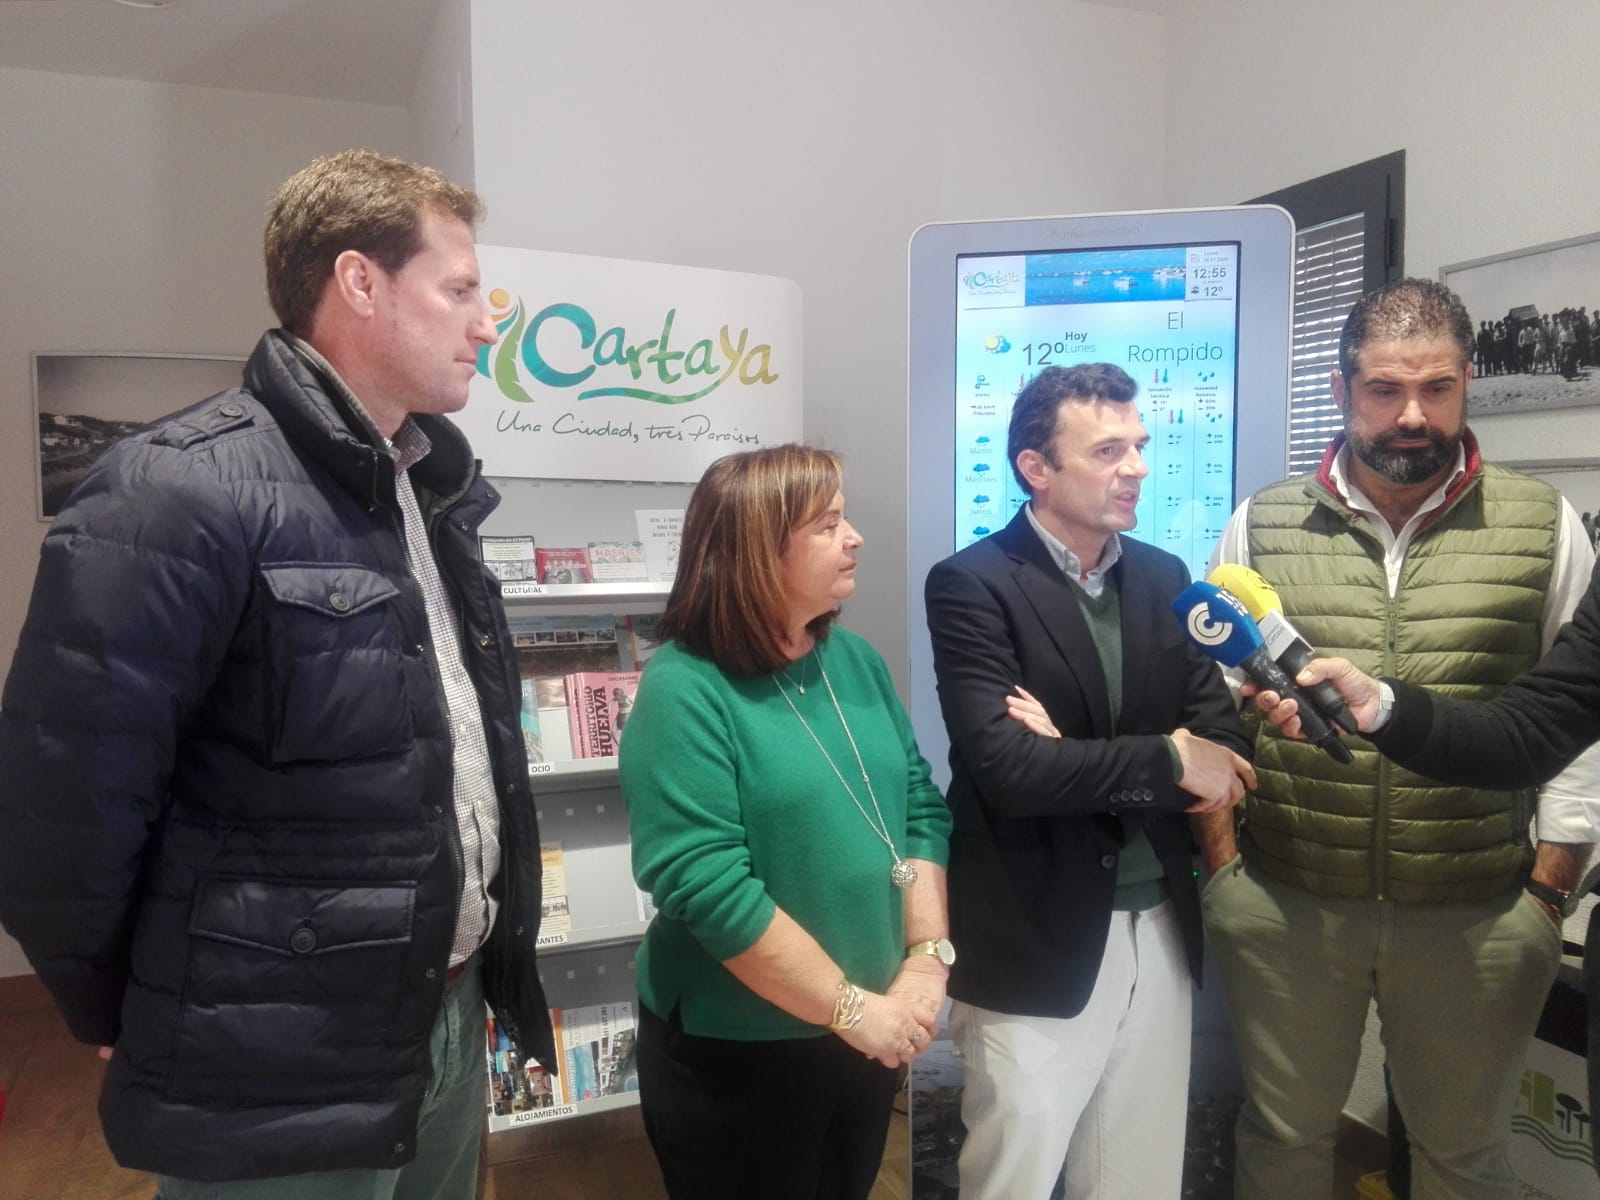 El vicesecretario de Turismo del PP en Andalucía visita El Rompido